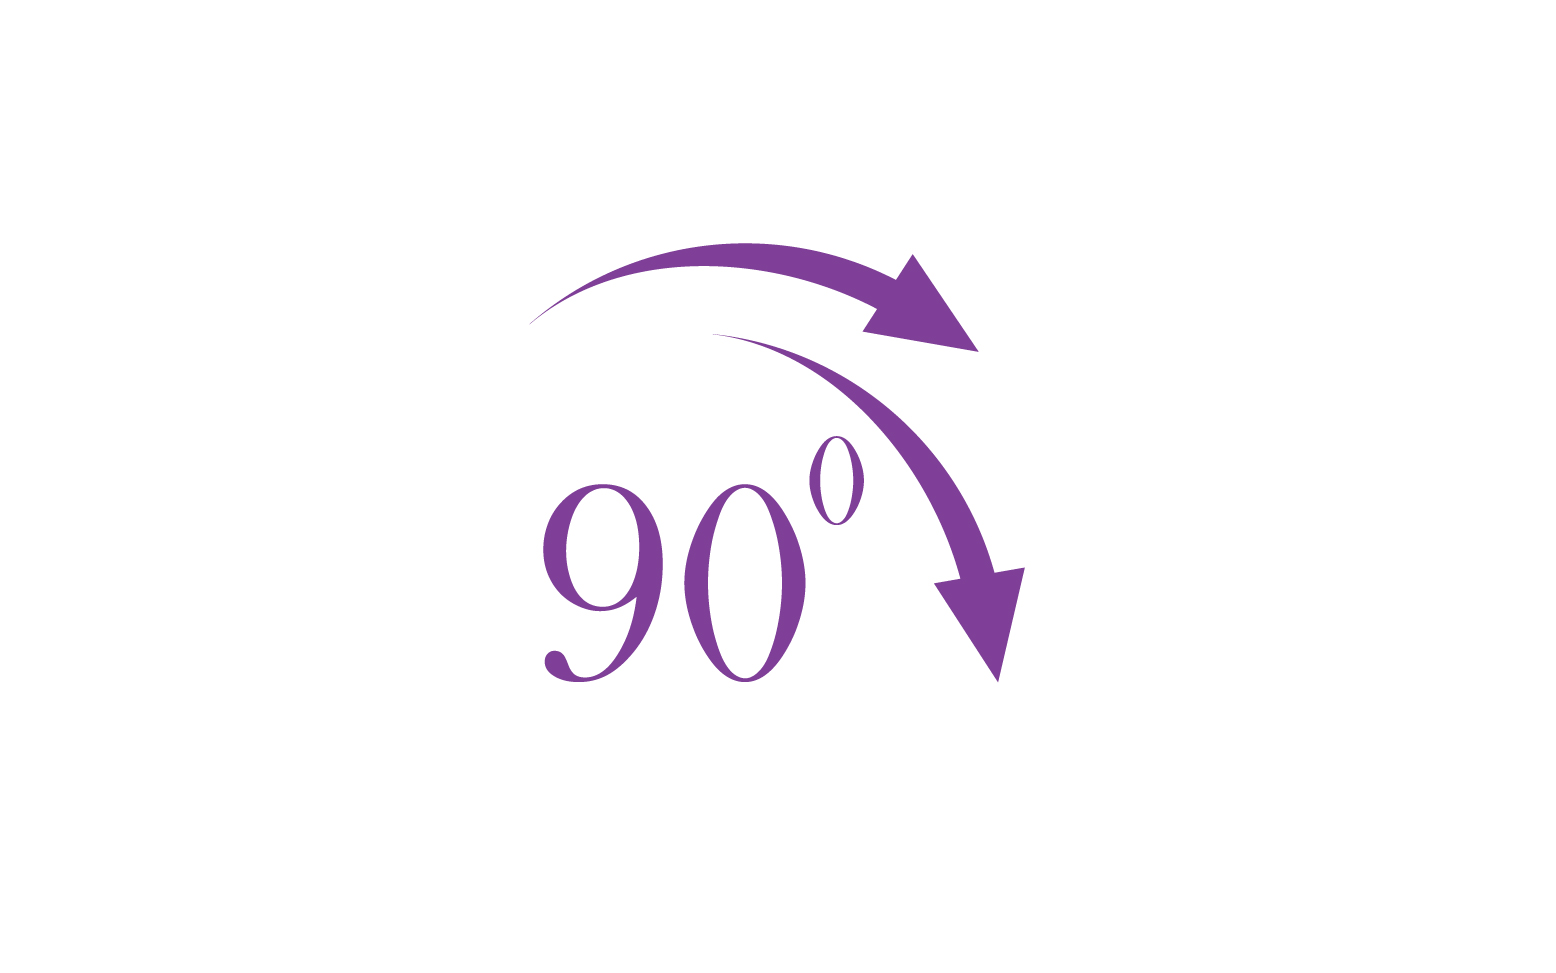 90 degree angle rotation icon symbol logo v46